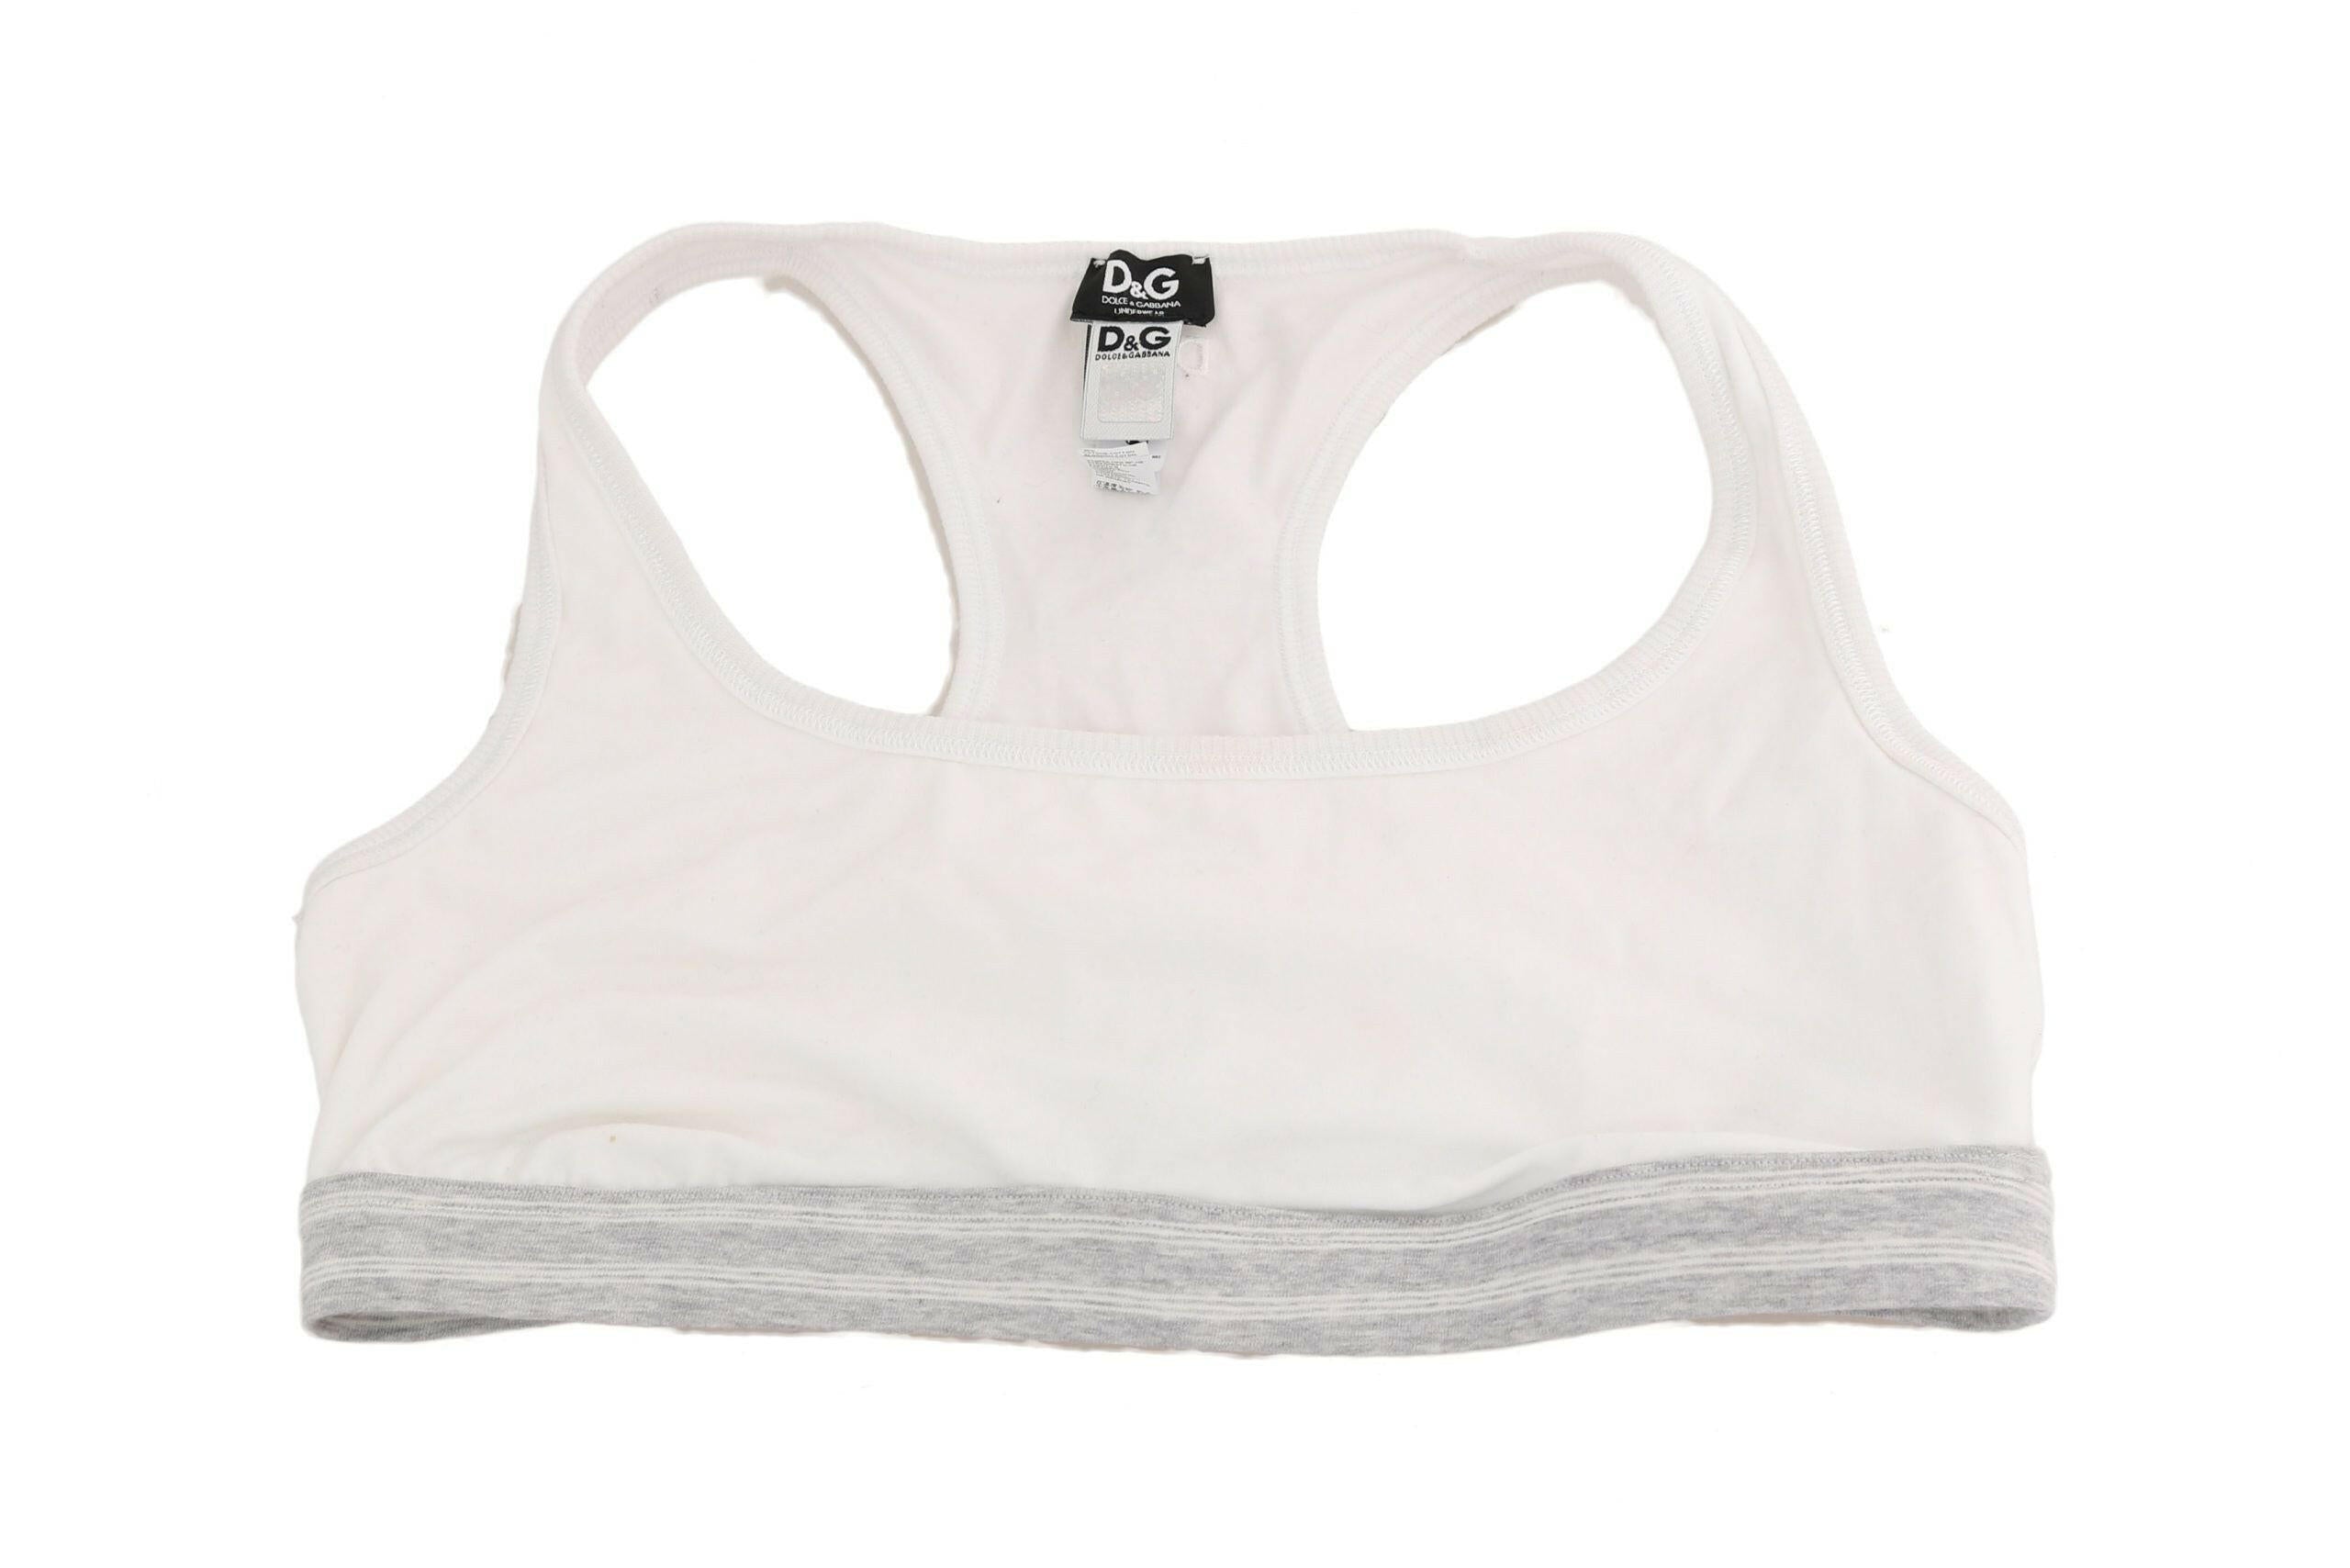 Dolce & Gabbana White Cotton Sport Stretch Bra Underwear - GENUINE AUTHENTIC BRAND LLC  